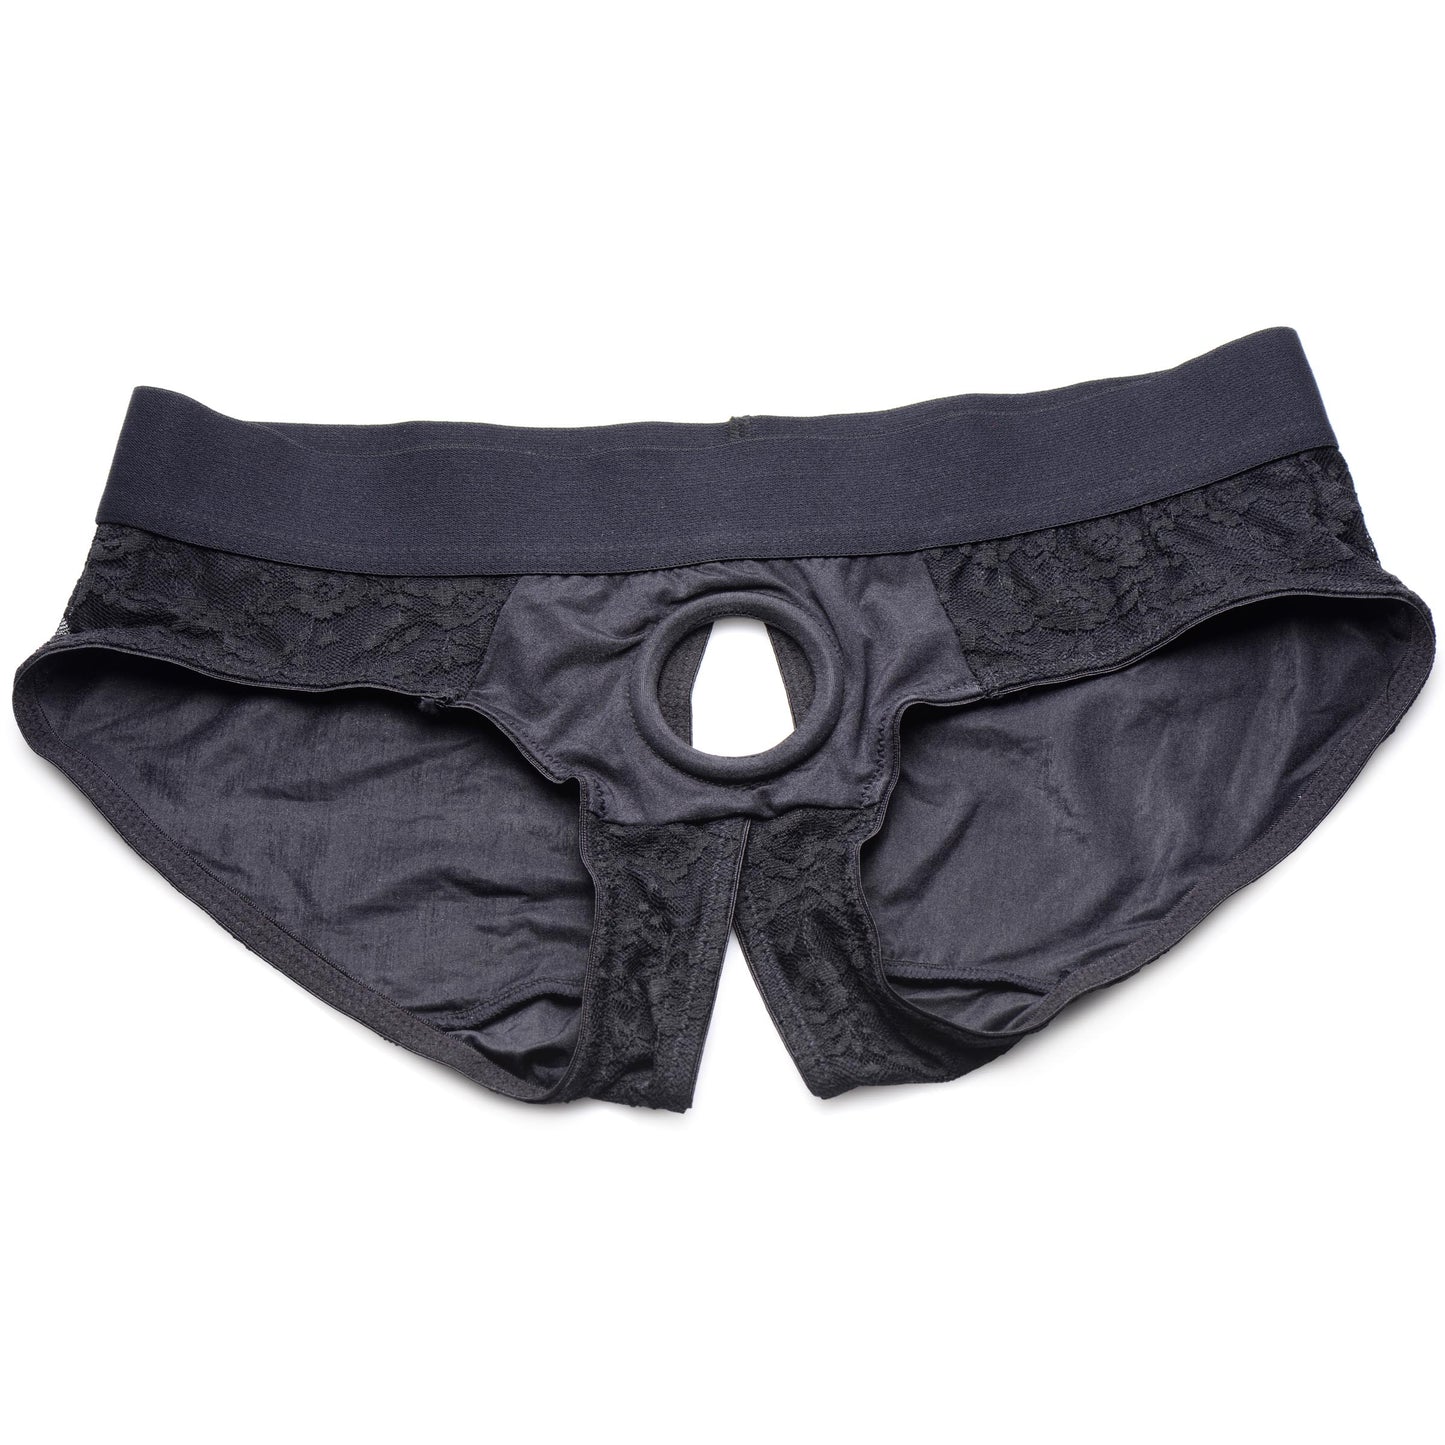 Lace Envy Black Crotchless Panty Harness - 3XL - UABDSM